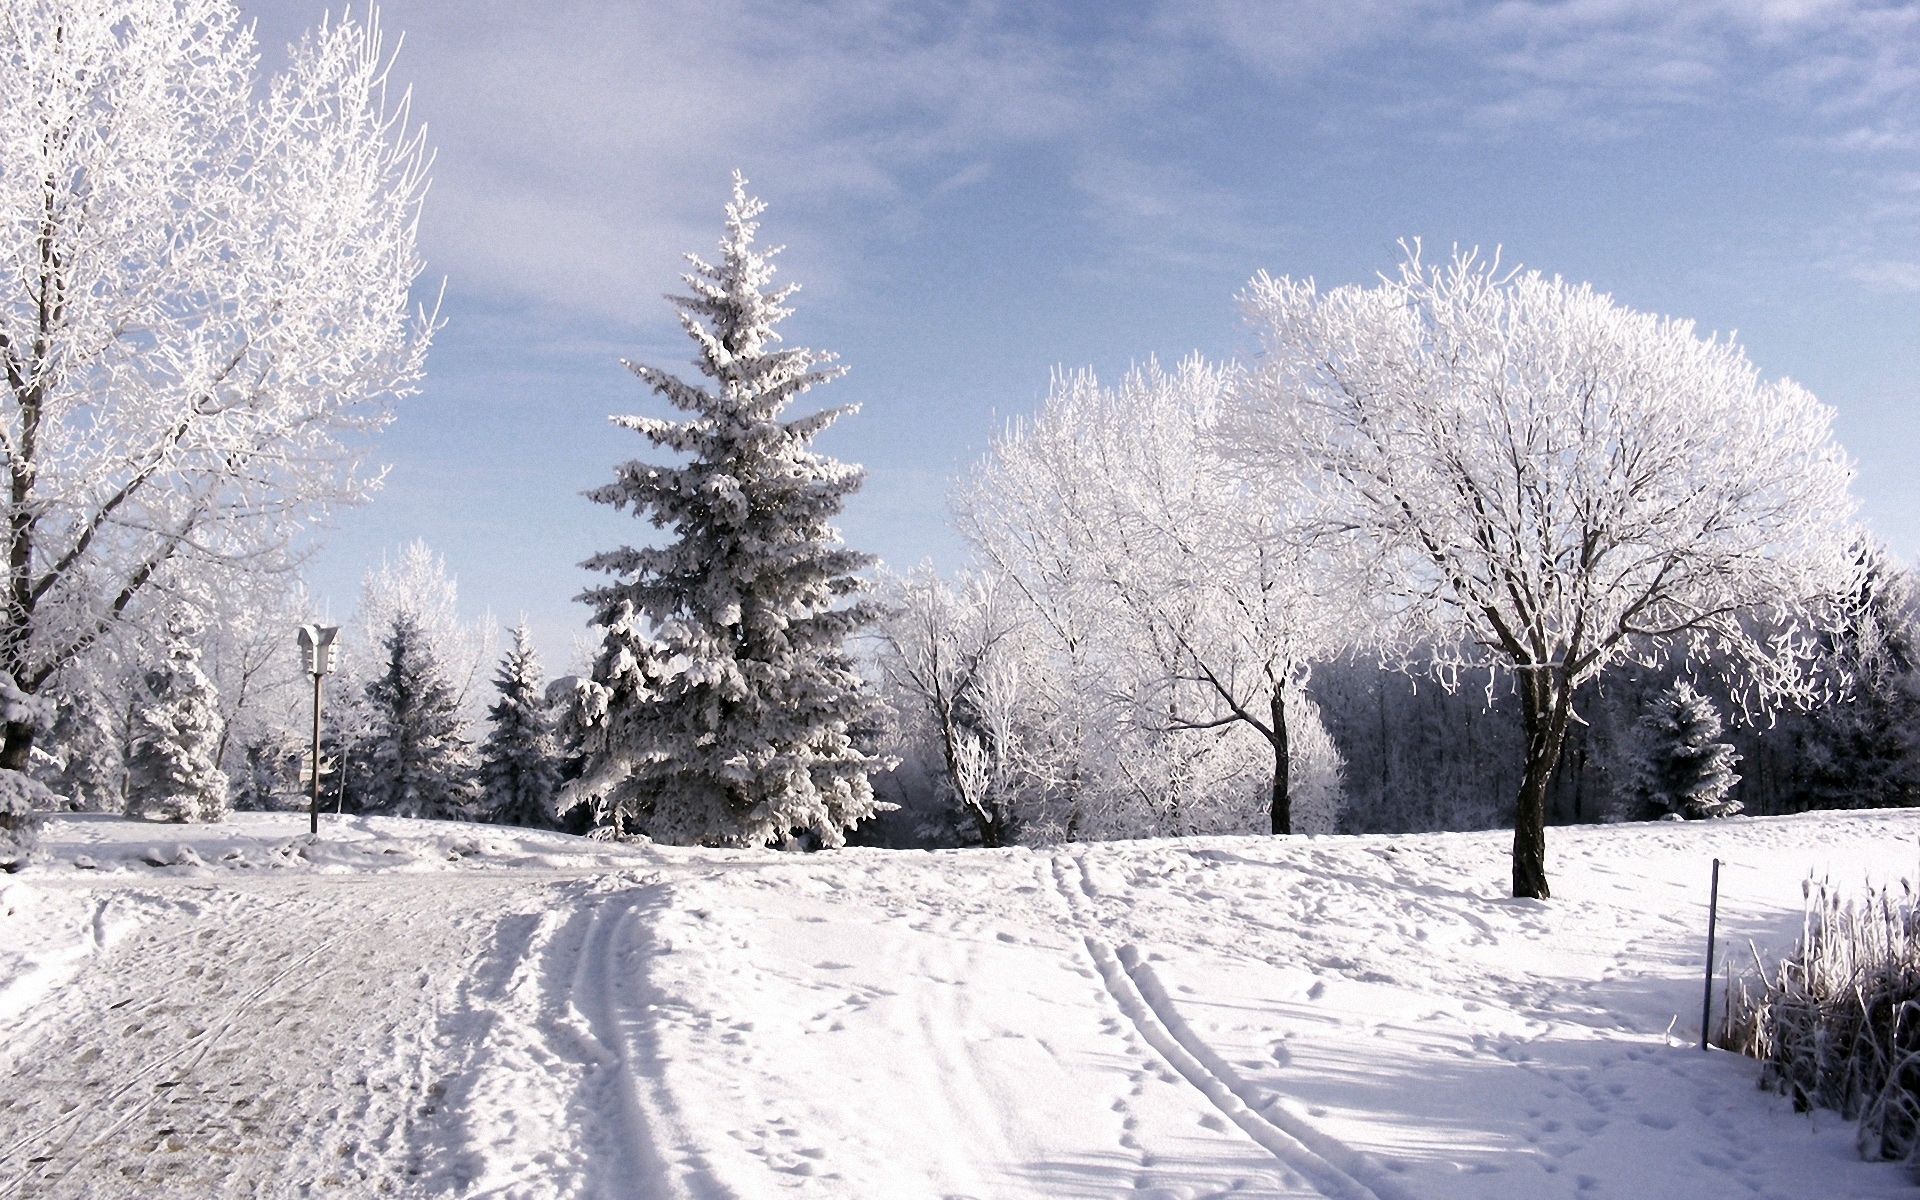 Картинки Зима, деревья, иней, лыжная трасса, следы, снег, небо, облака, подъем фото и обои на рабочий стол